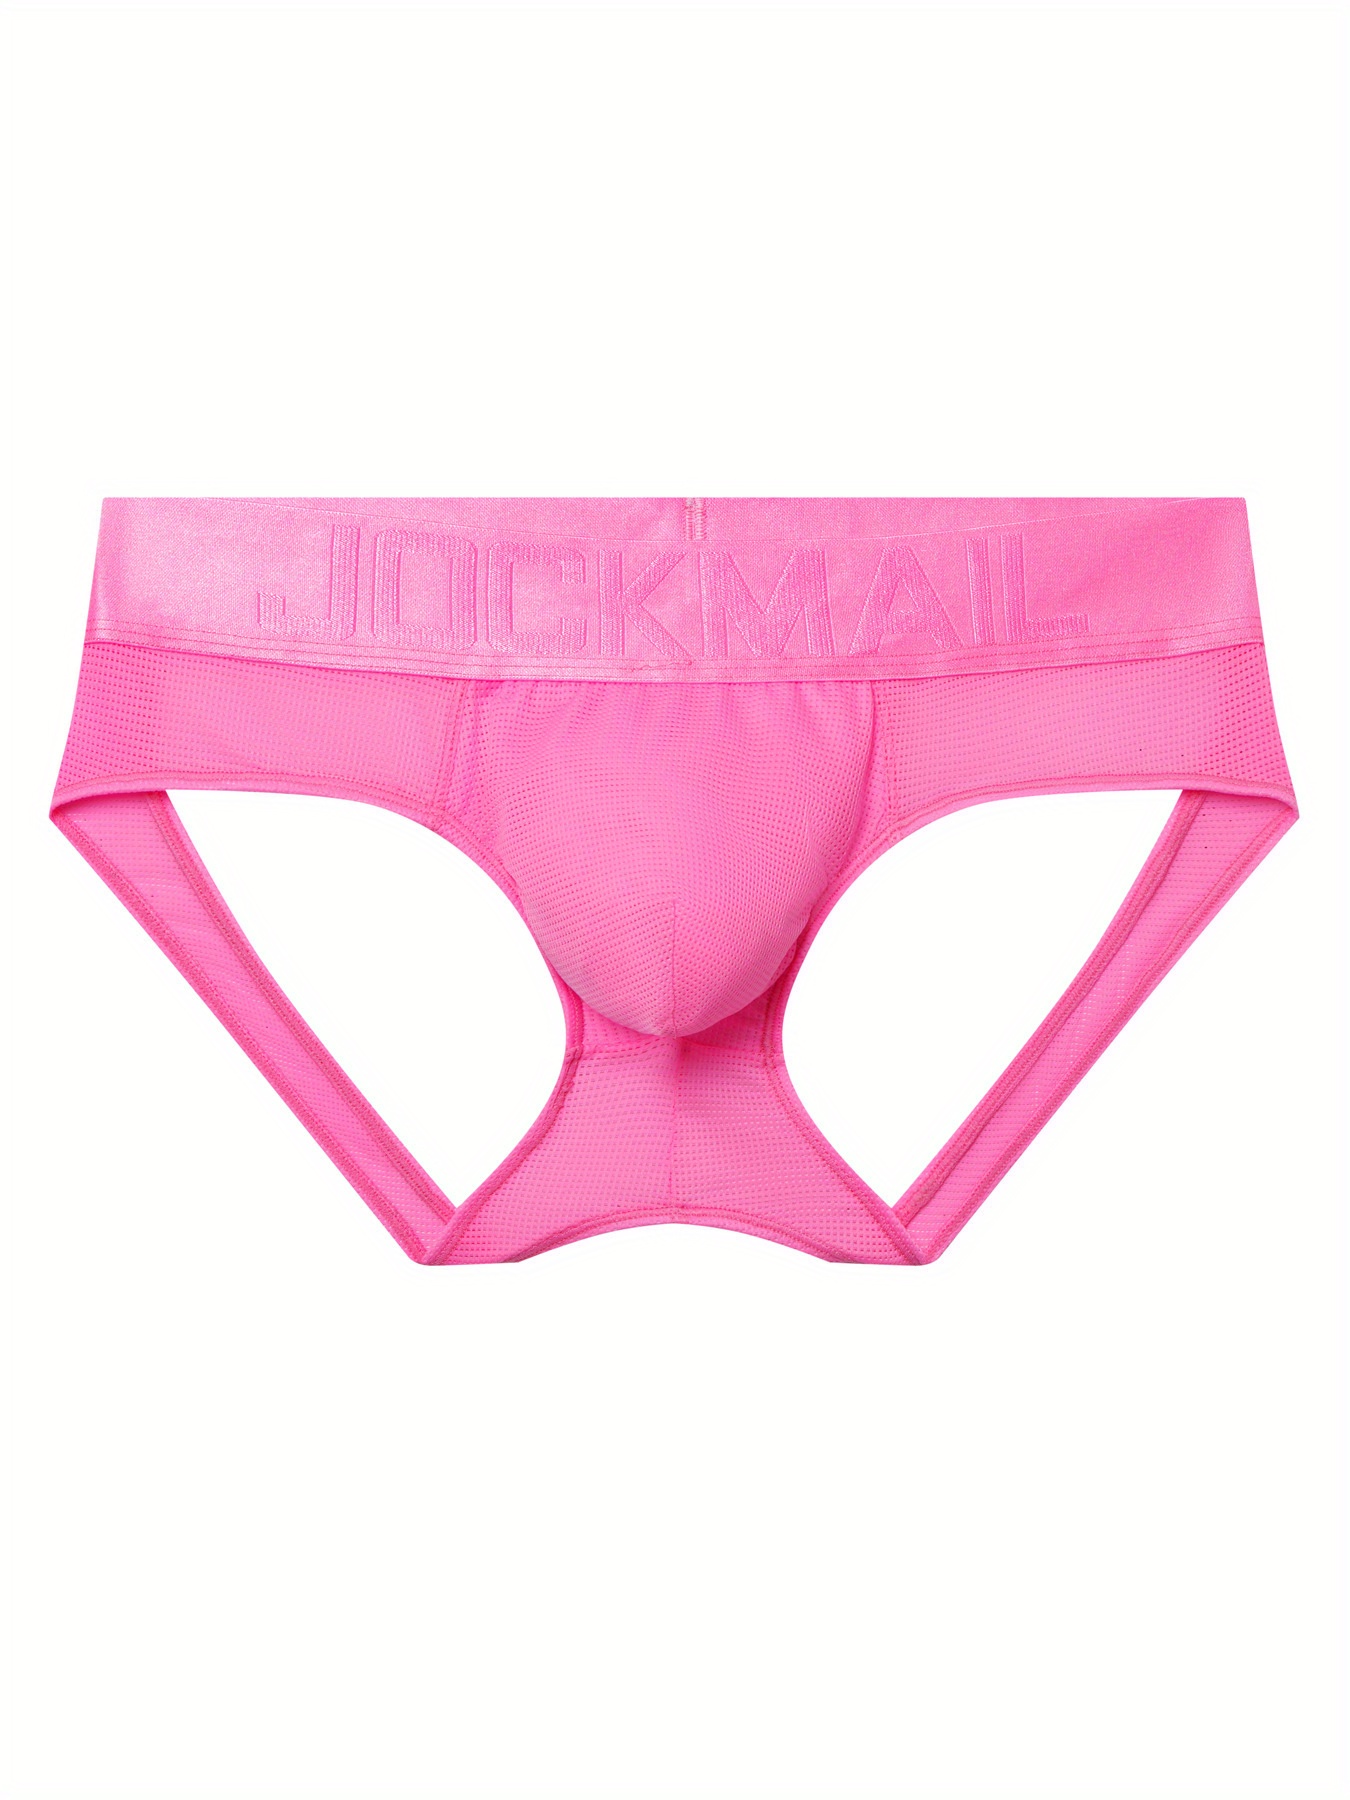 Men's Low Rise Sexy T-Back Jockstrap Open Back G-Strings Bikini Thongs  Underwear